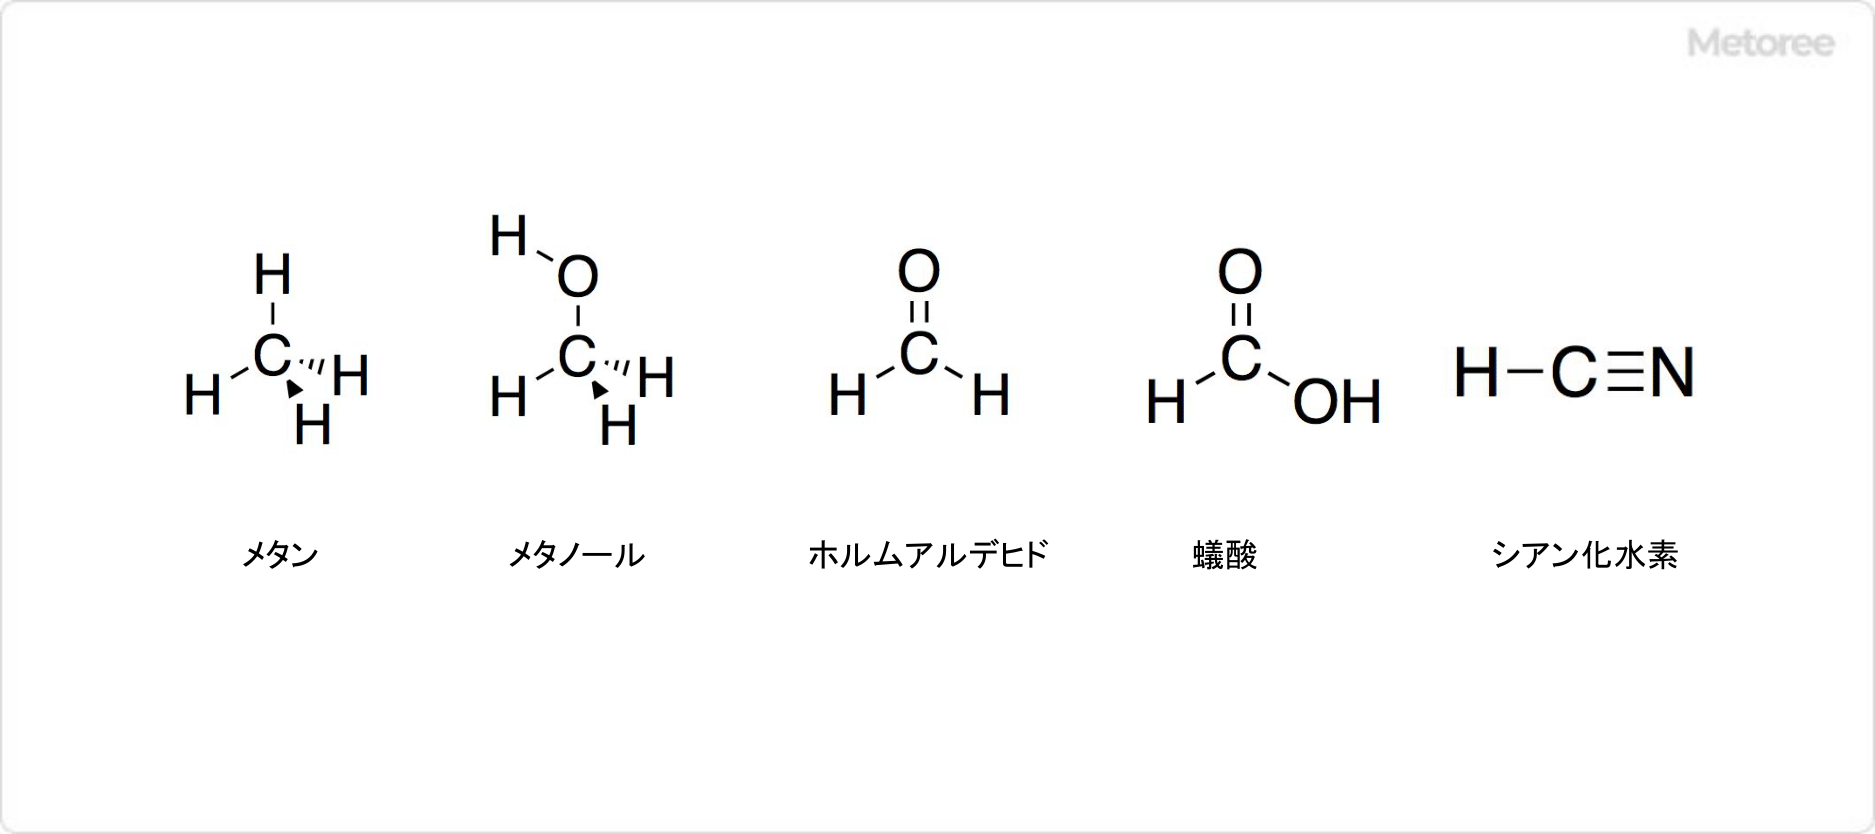 メタンに関連する化合物